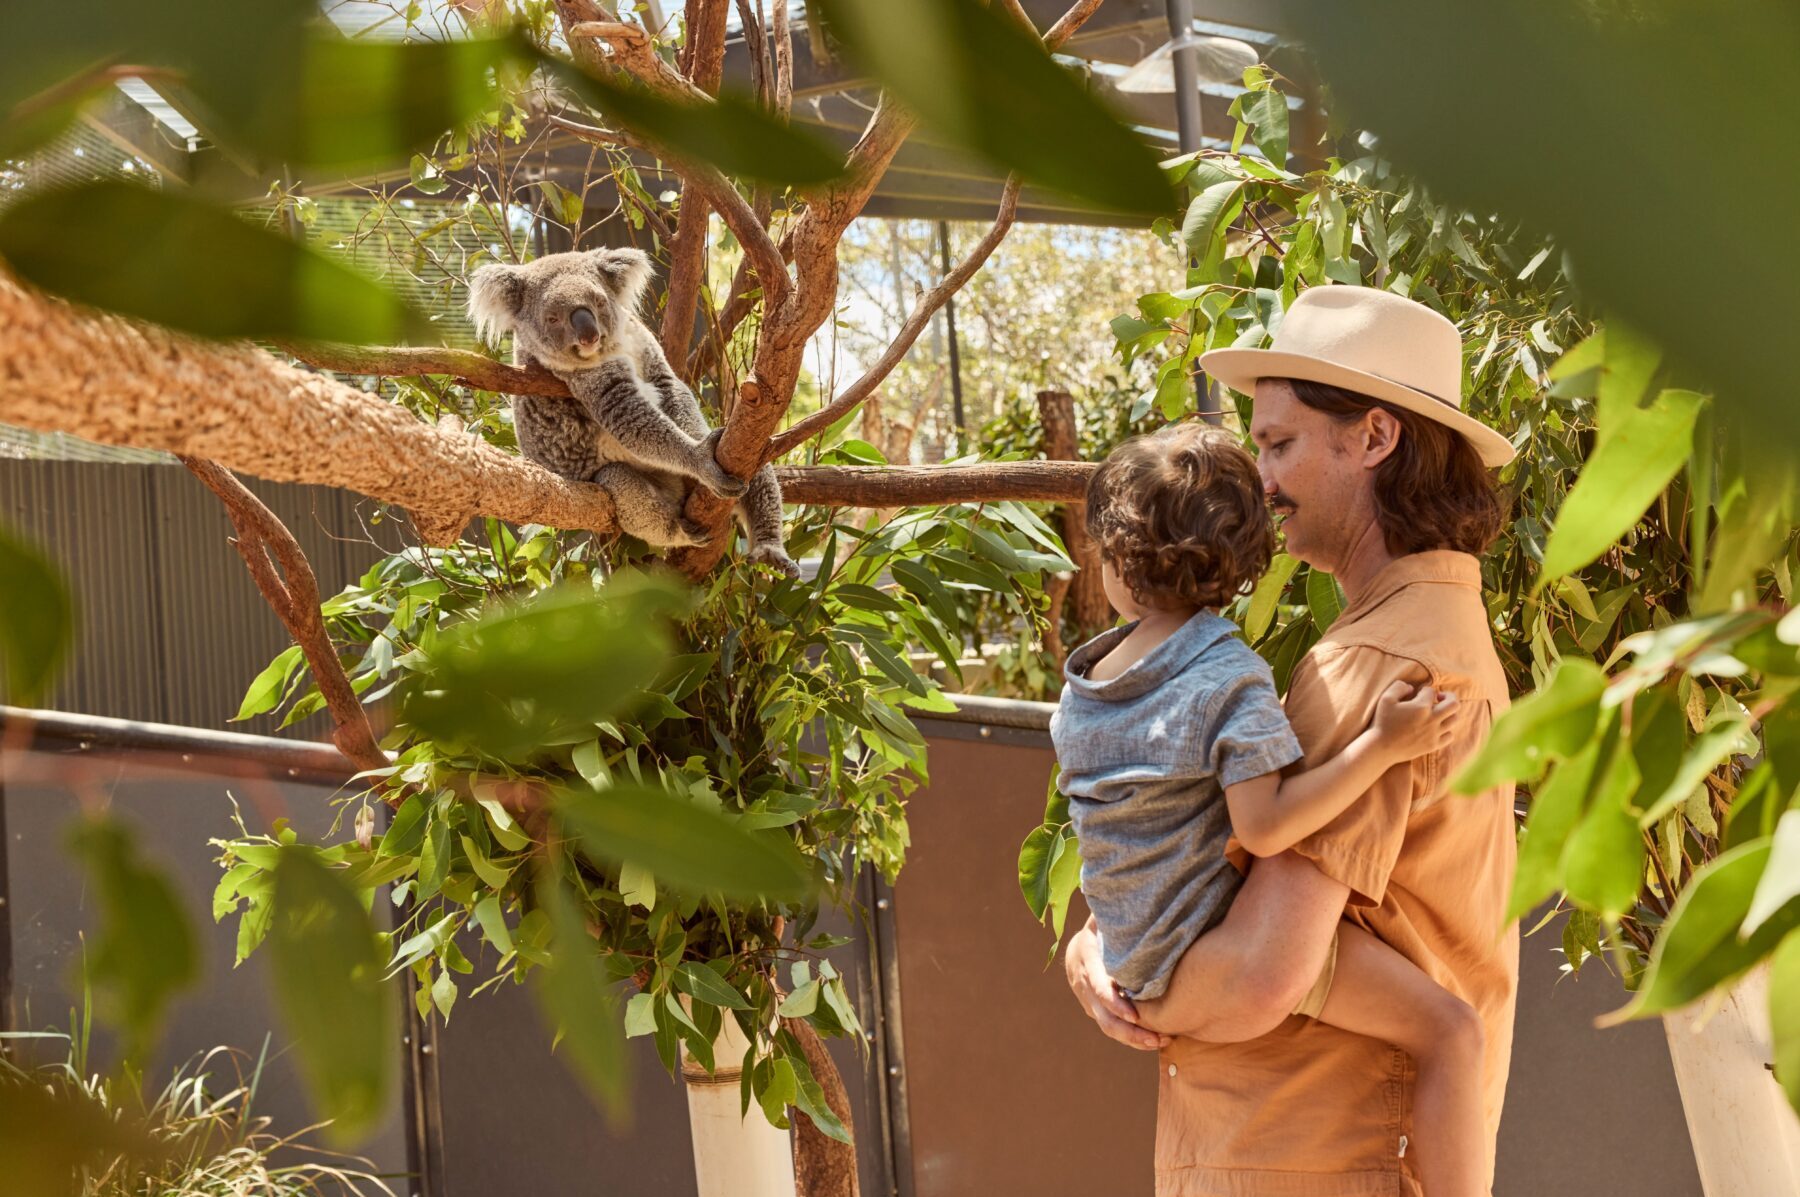 Family enjoying a koala encounter at Taronga Zoo, Mosman in Sydney